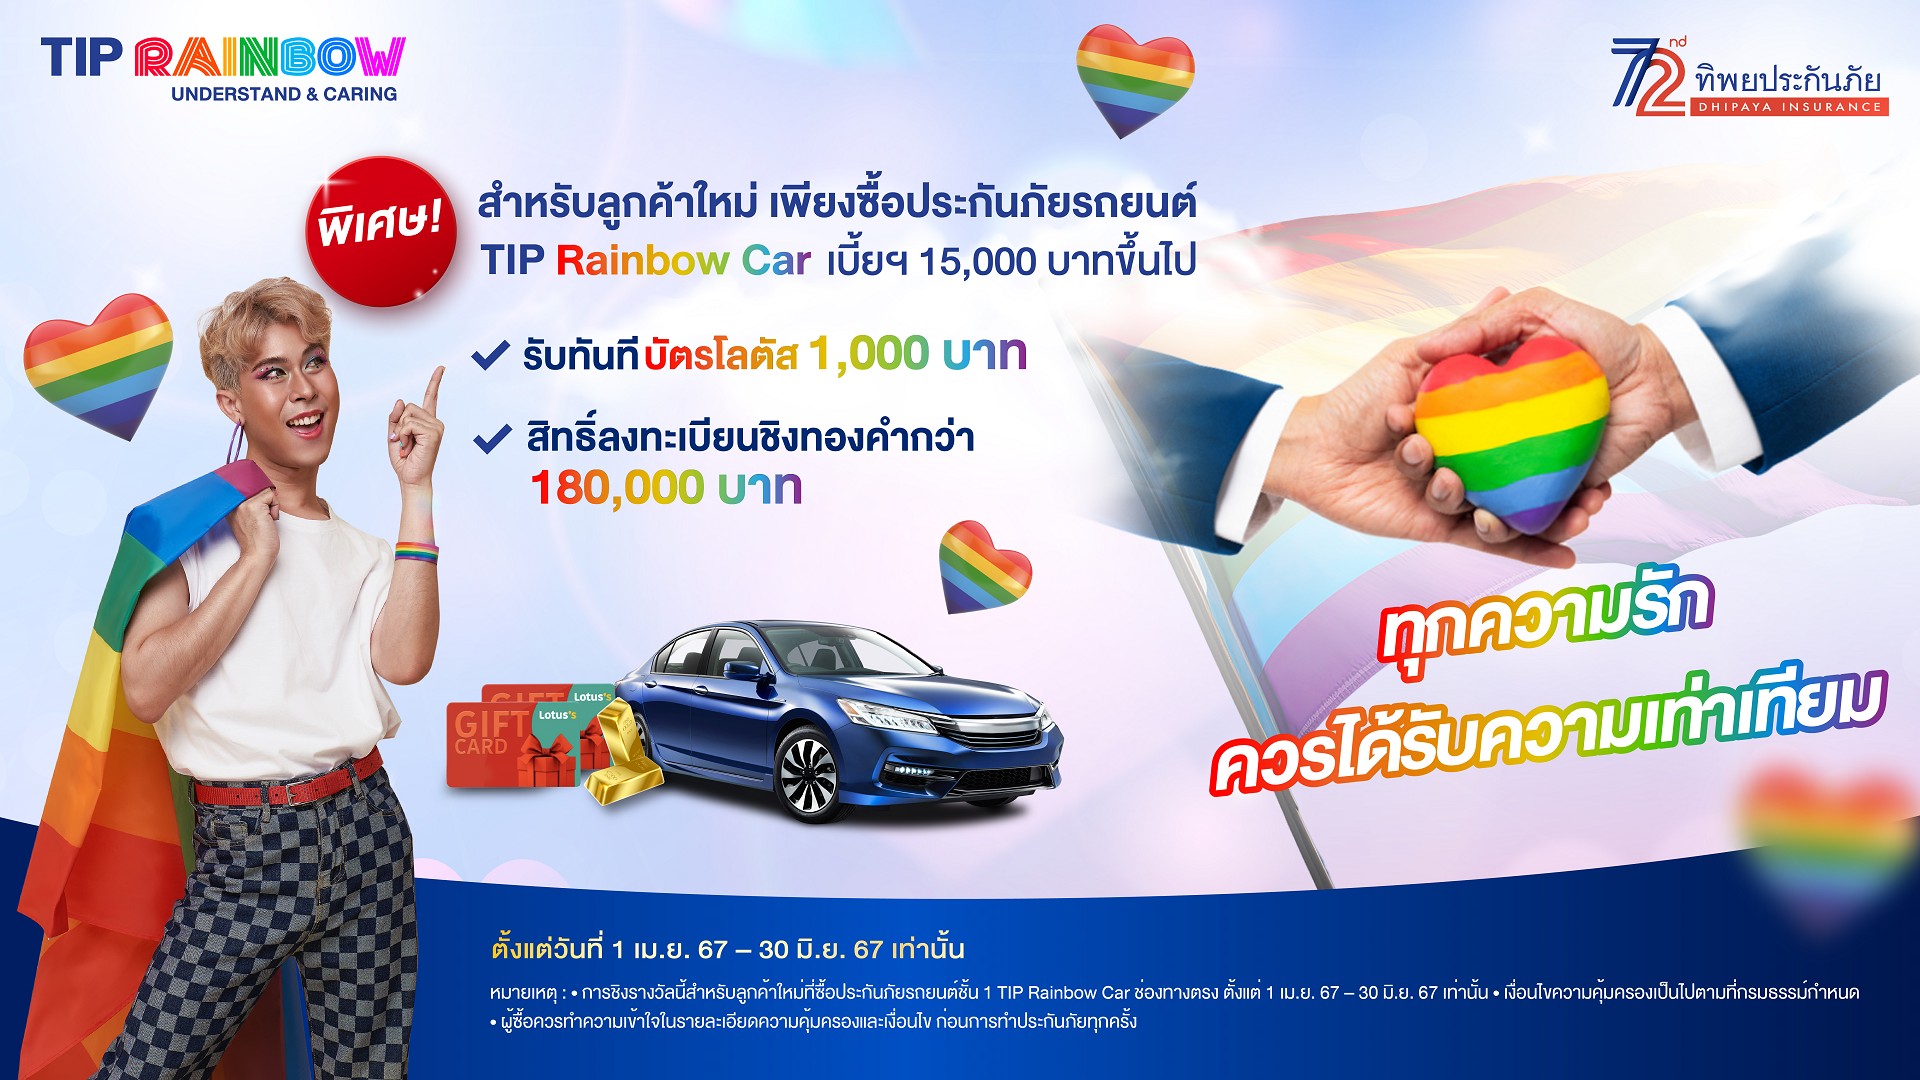 TIP Rainbow Car 070467